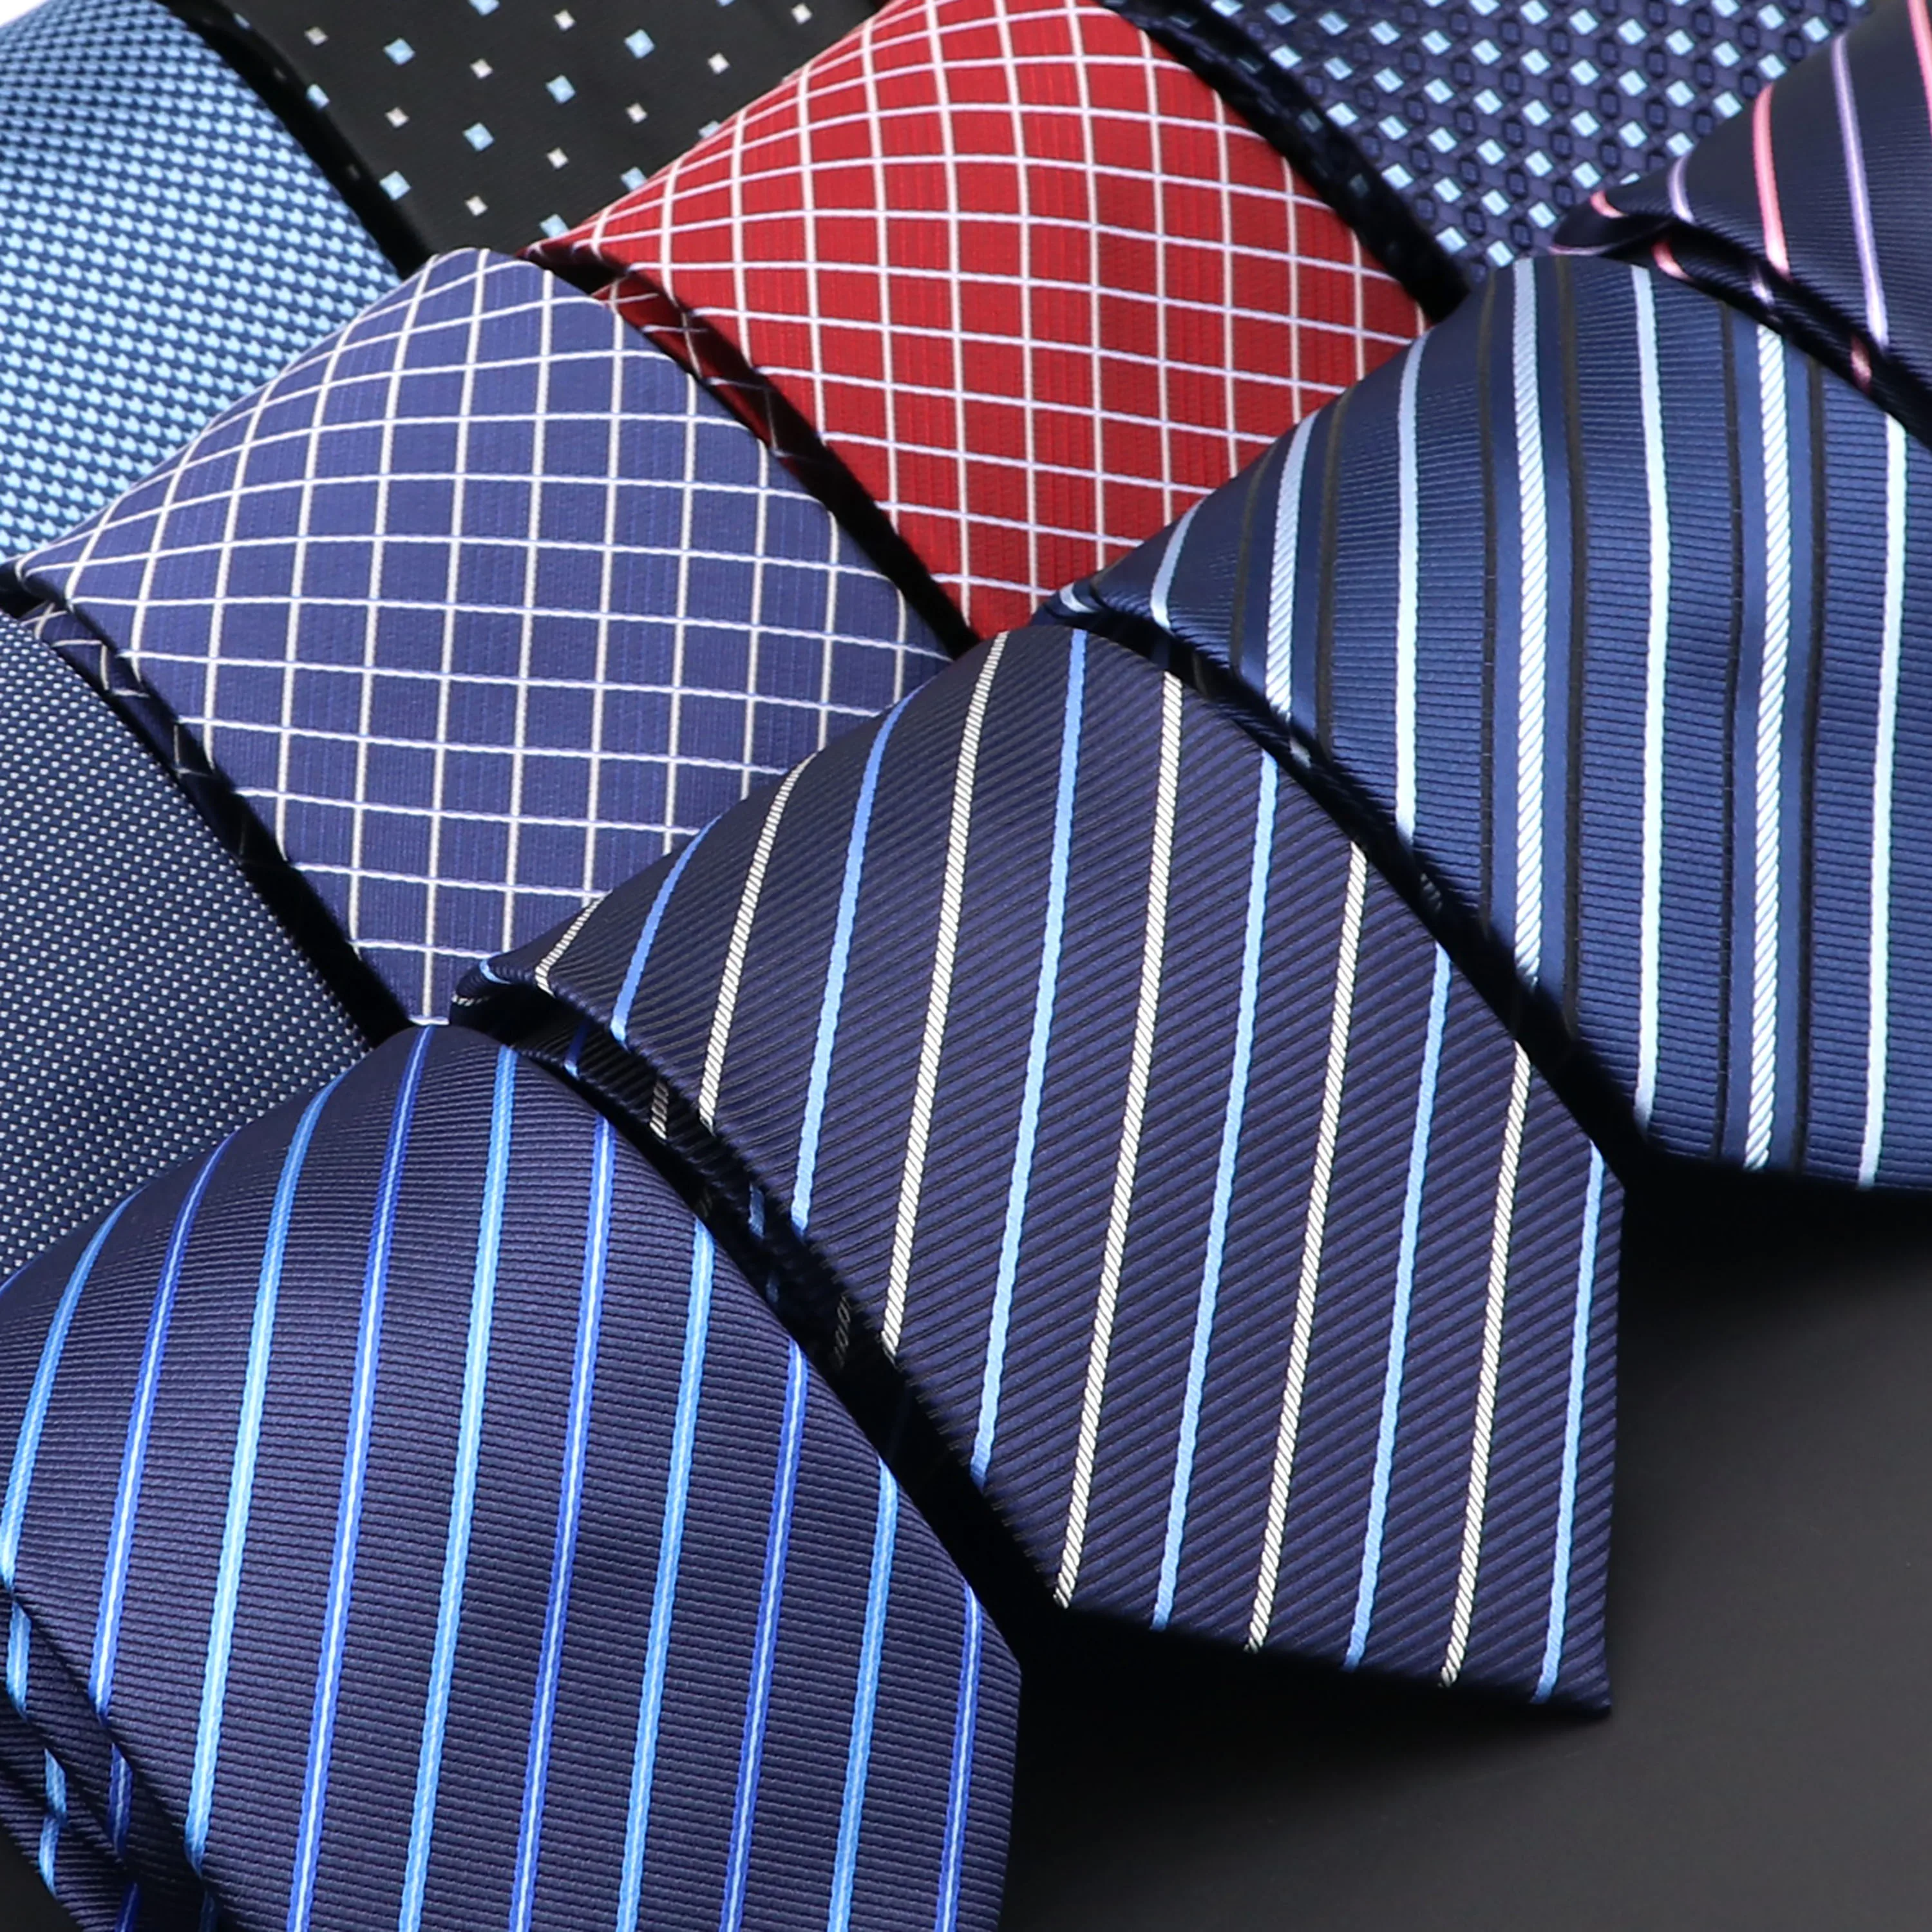 New Men's Tie Fashion Neckties Classic Men's Stripe Navy Blue Wedding Ties Jacquard Woven Men Solid Tie Polka Dots Necktie Gift